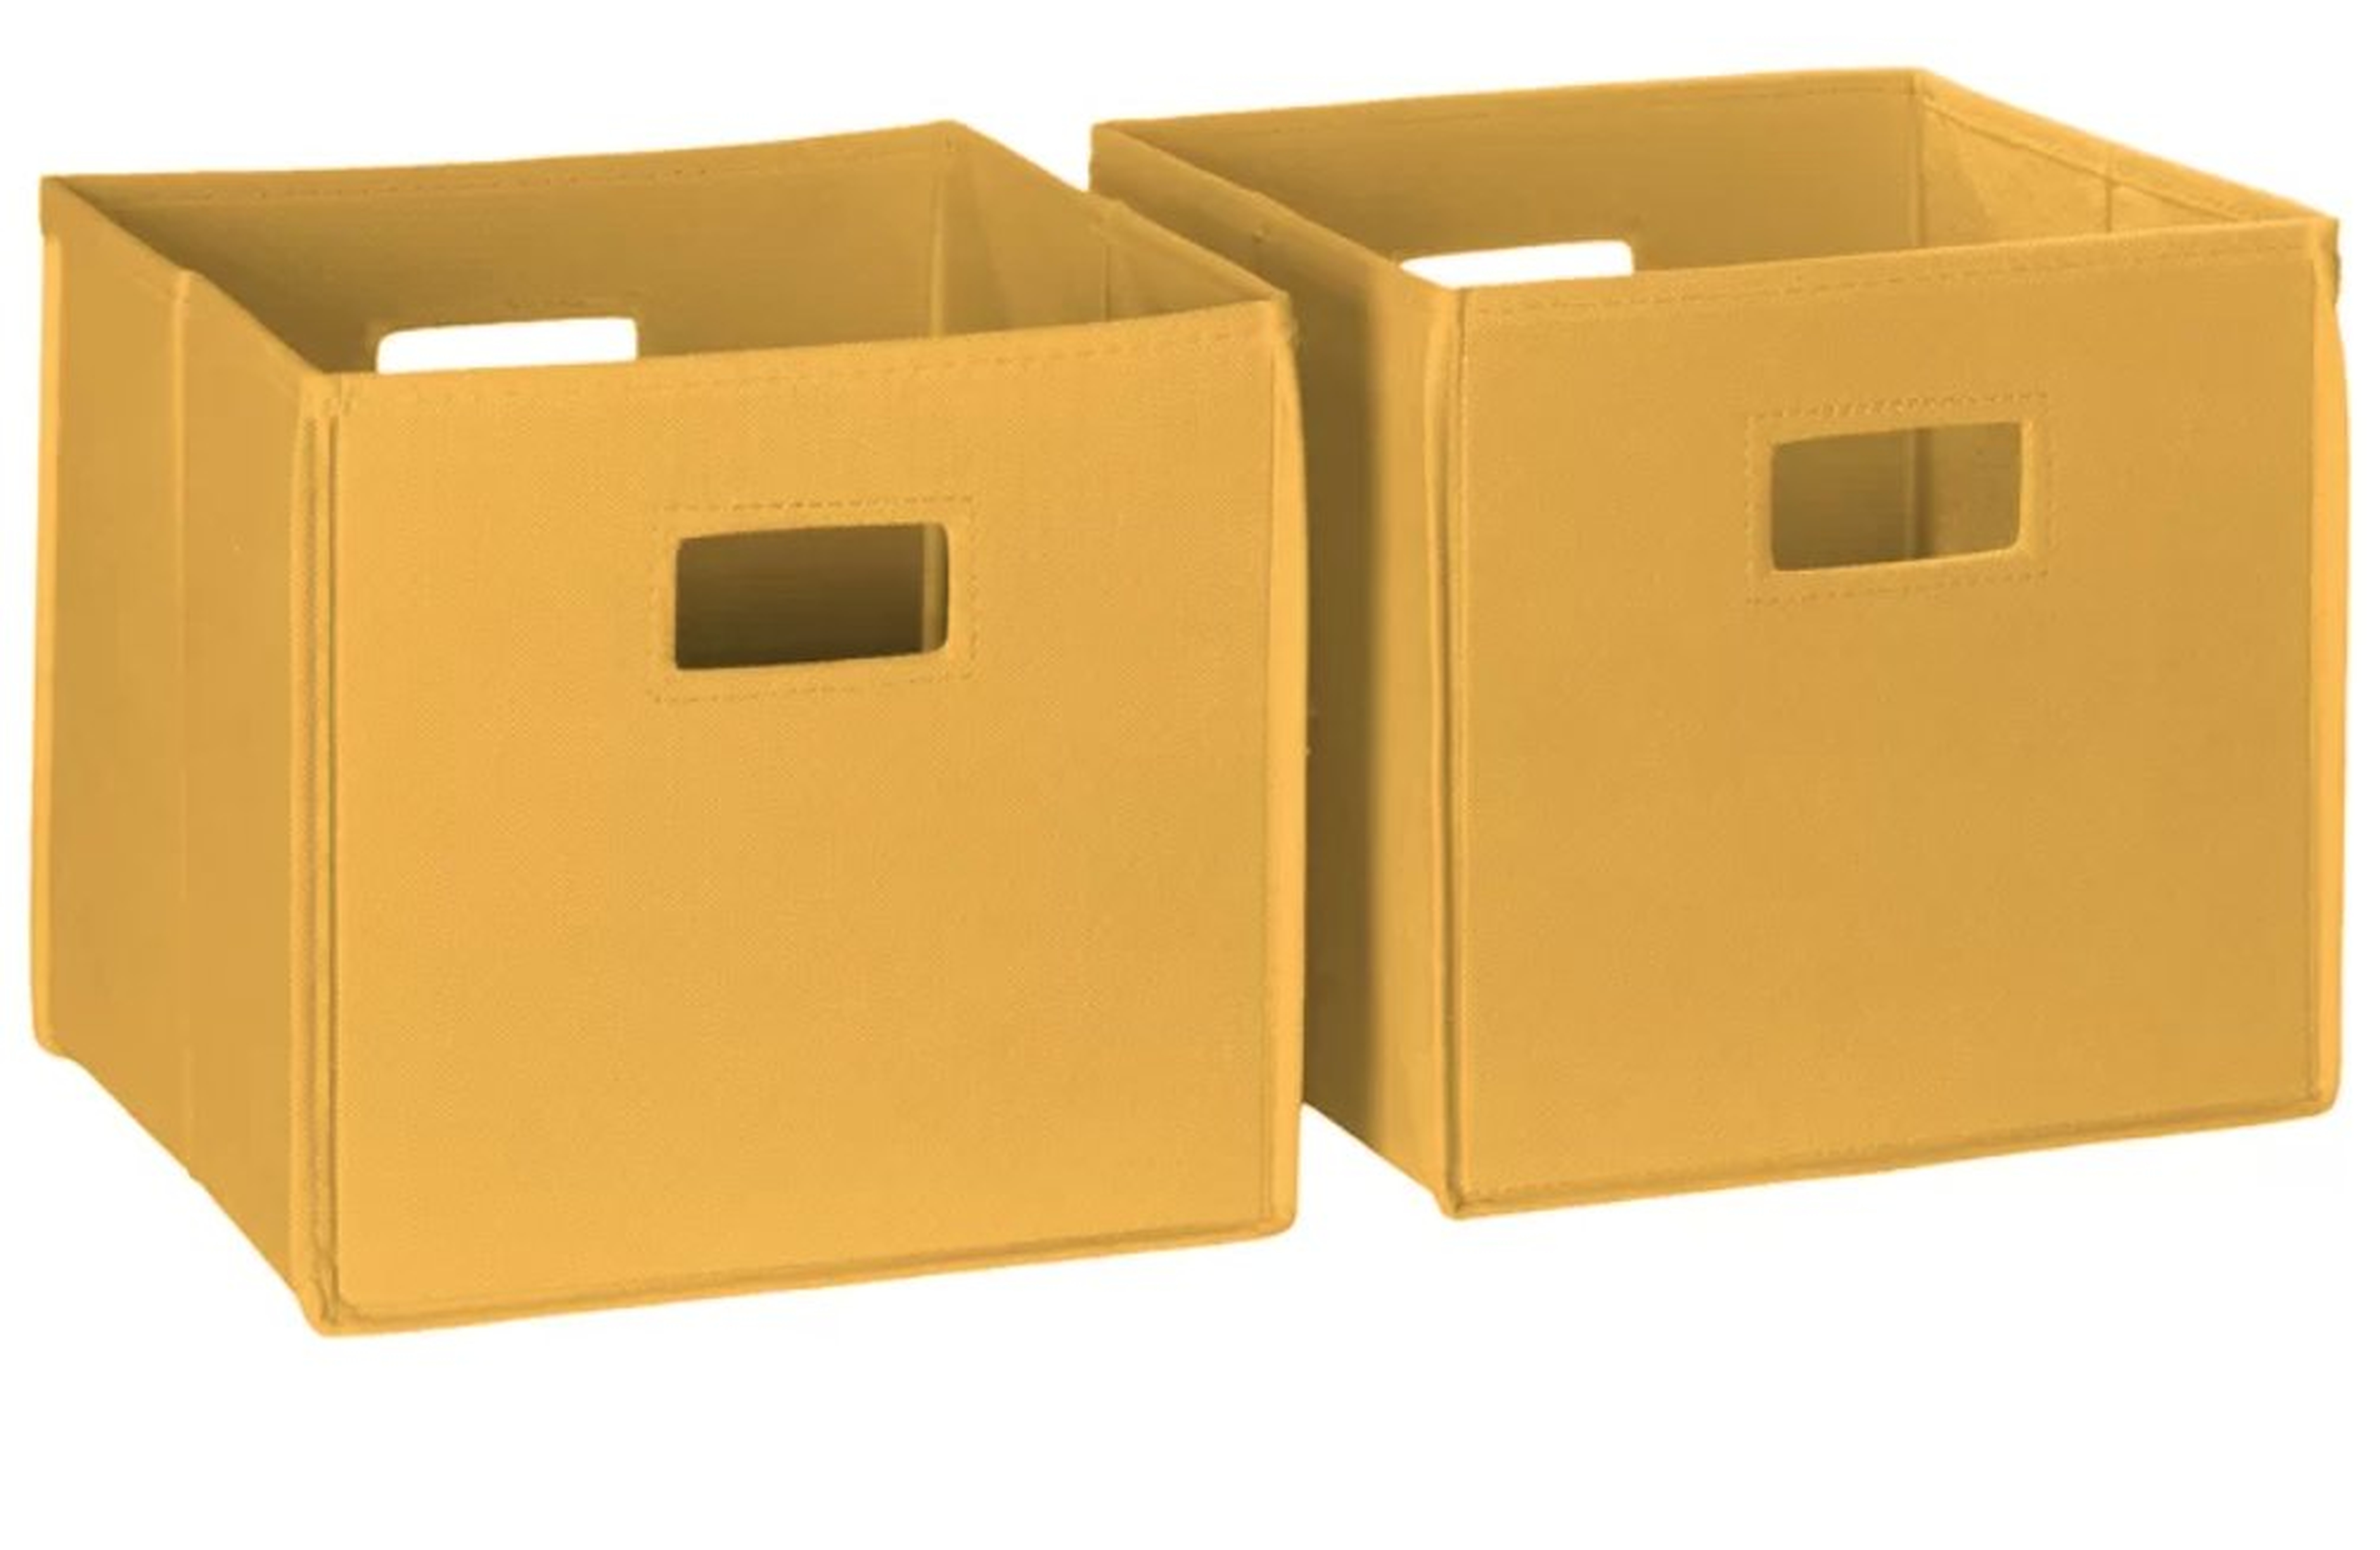 Krout Folding Fabric Cube or Bin - Wayfair